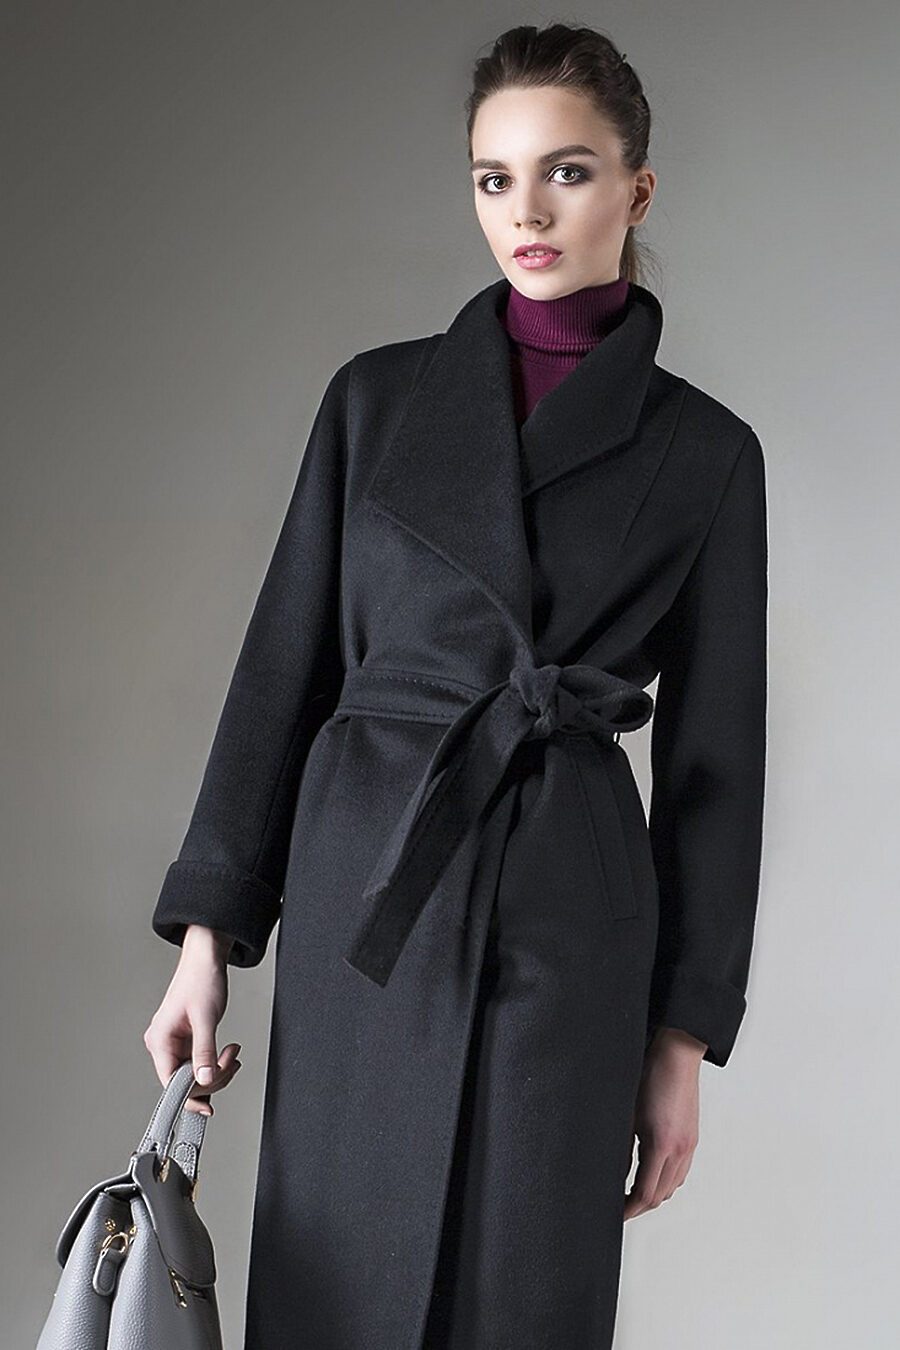 Купить пальто 48. Пальто pompa пальто 2020. Классическое пальто женское. Элегантное женское пальто.